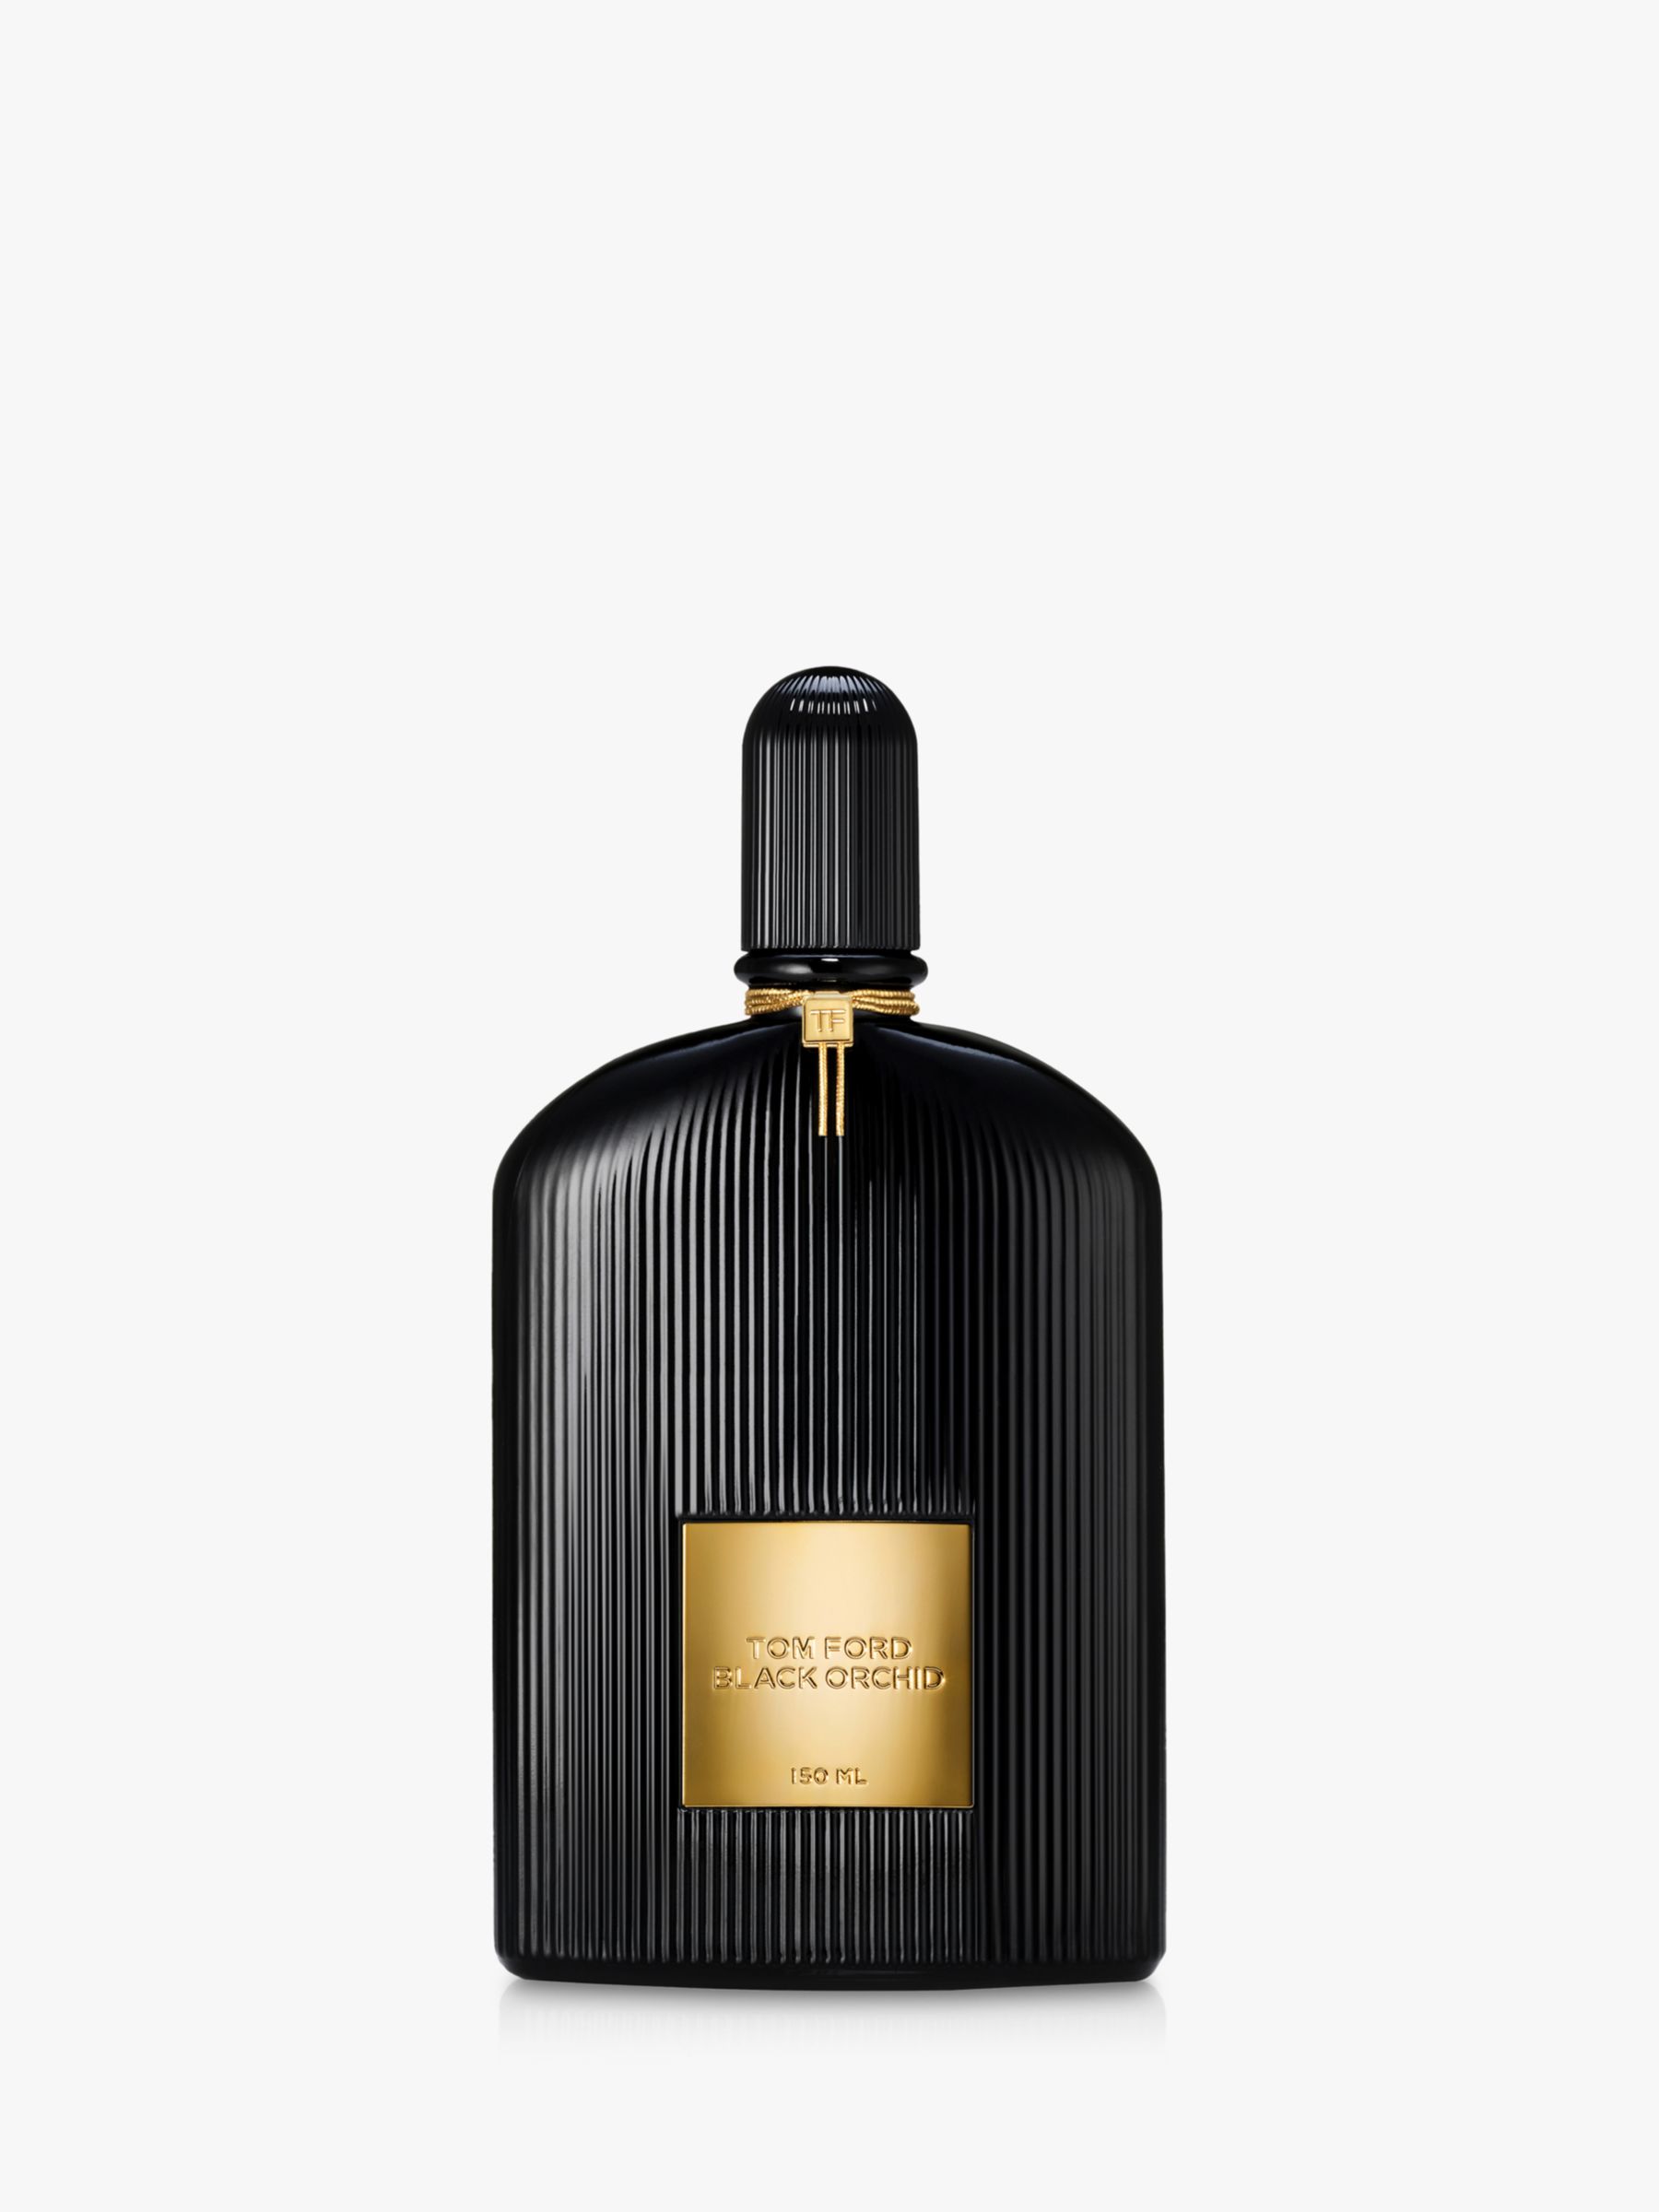 TOM FORD Black Orchid Eau de Parfum, 150ml 1